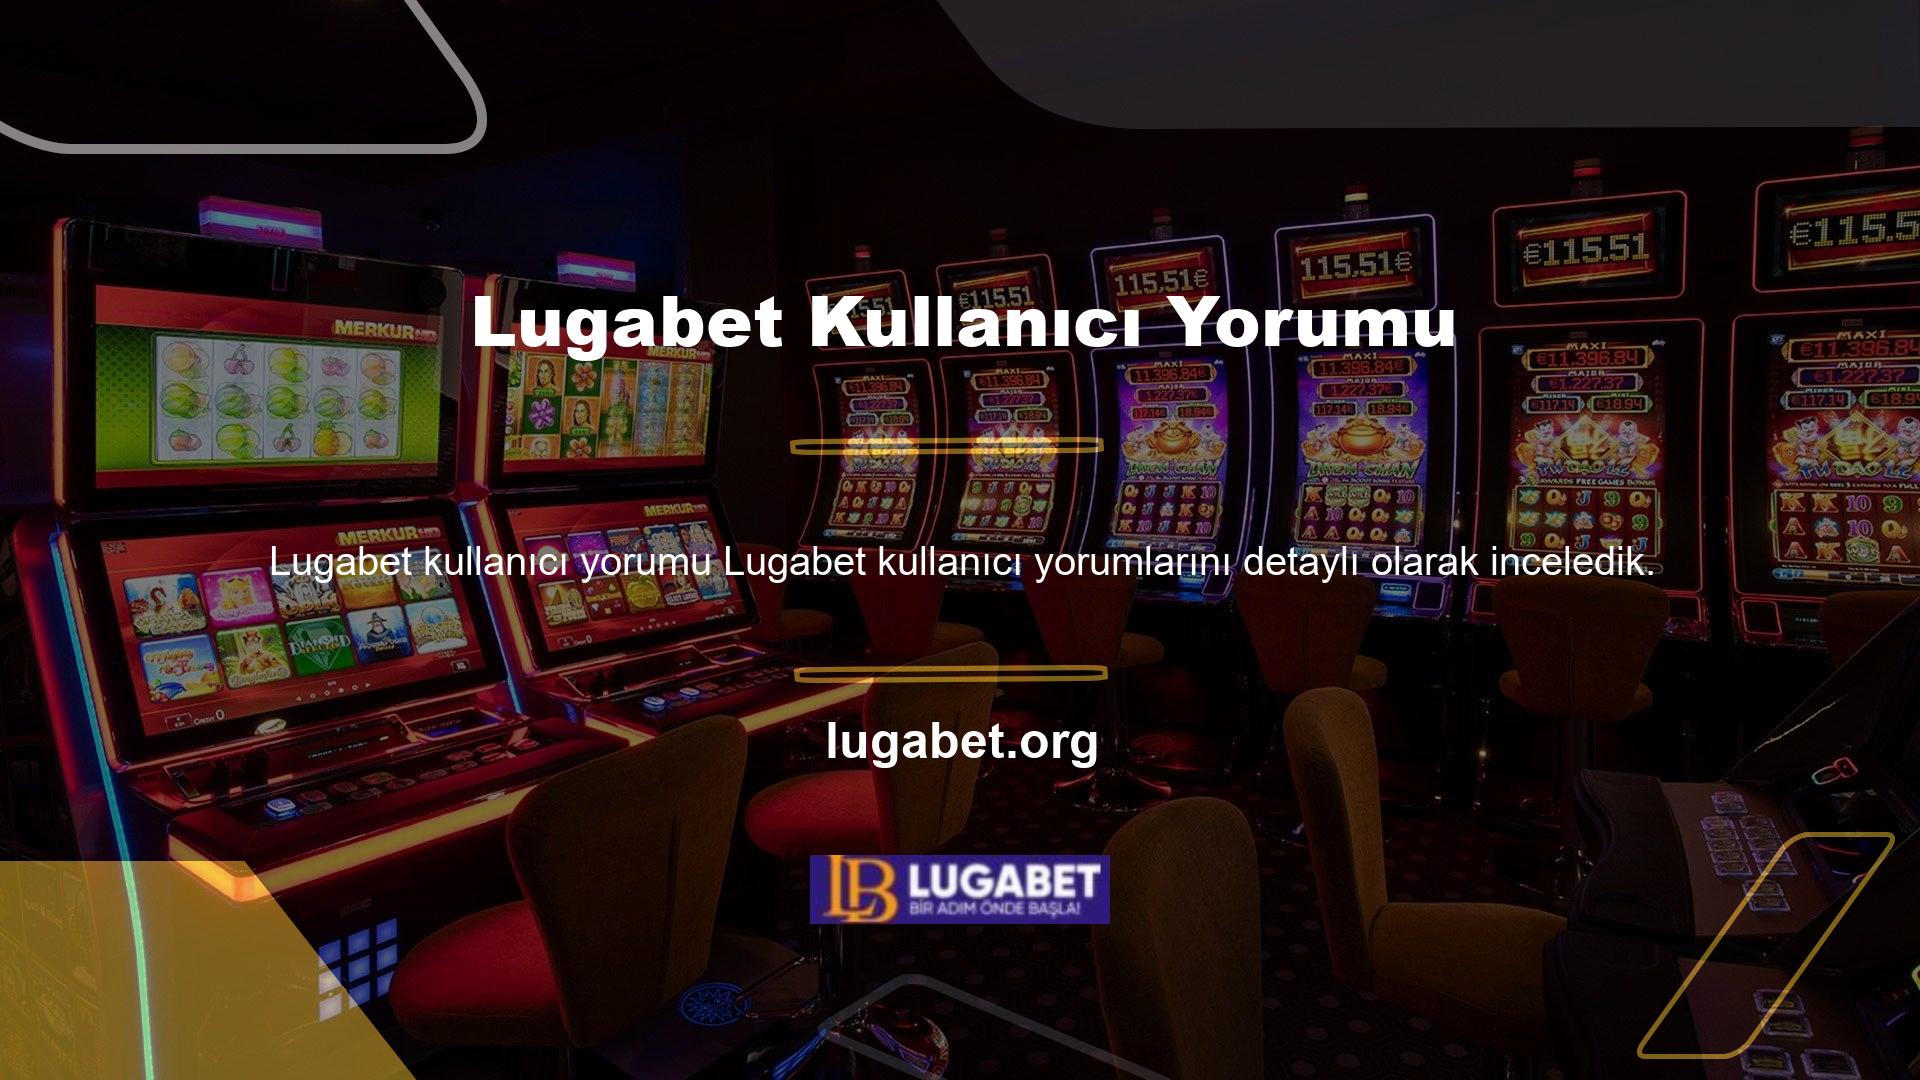 Lugabet, kullanıcıların genel olarak olumlu yorumlar bıraktığı bir sitedir ve uluslararası bir casino sitesidir